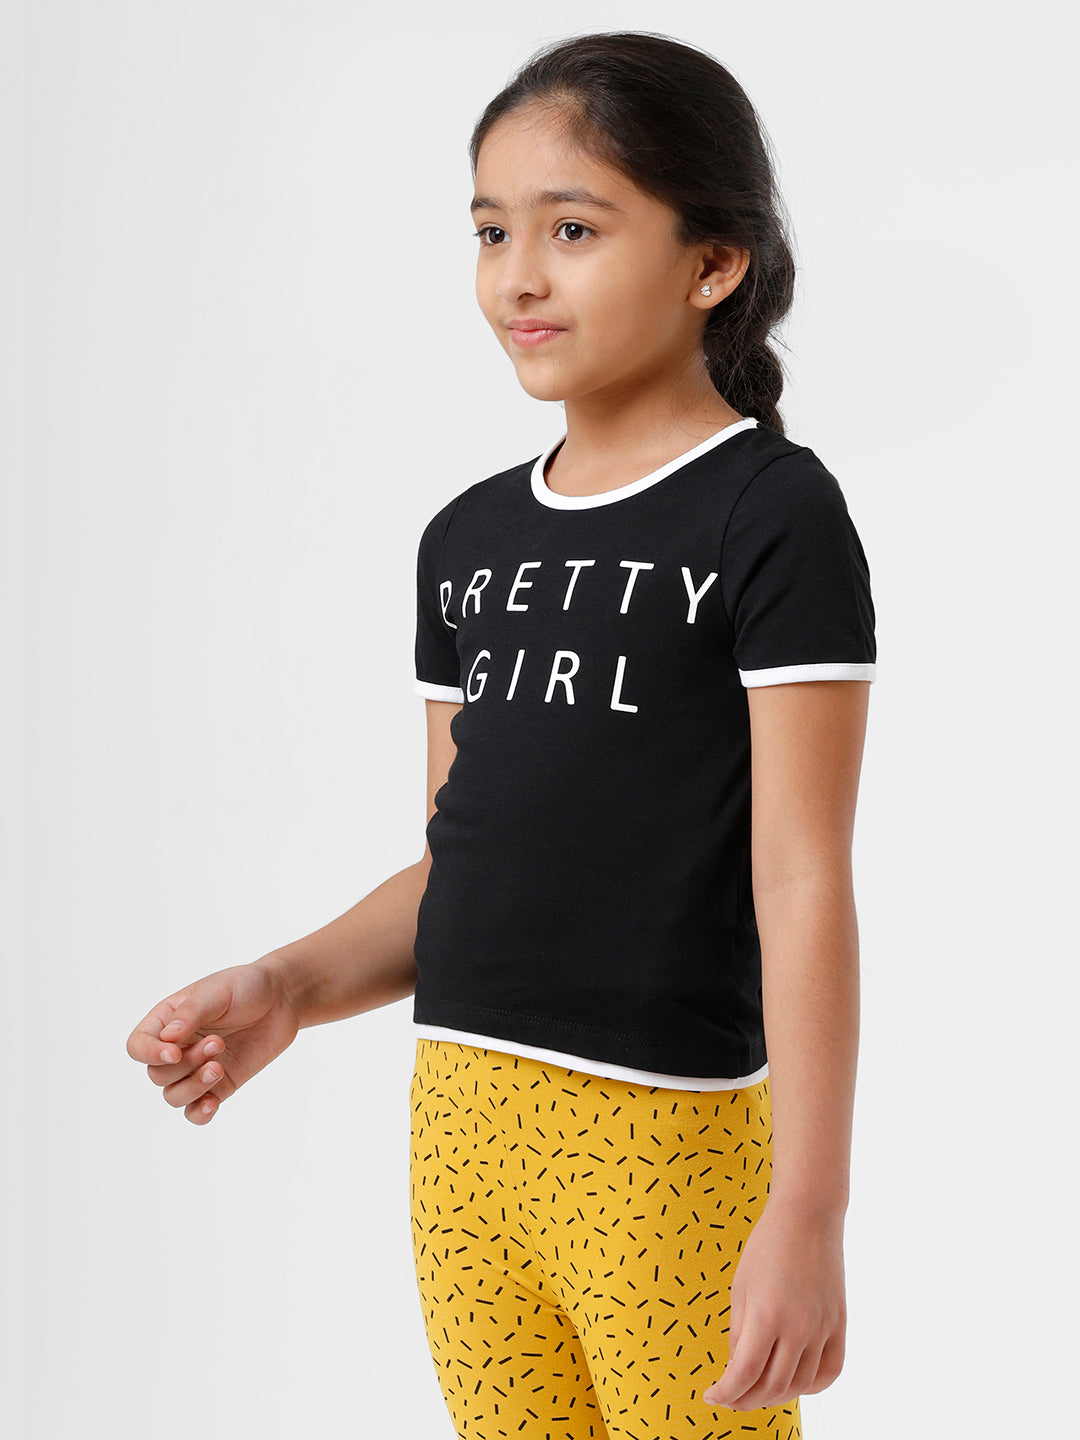 Kids - Girls Printed Top Black